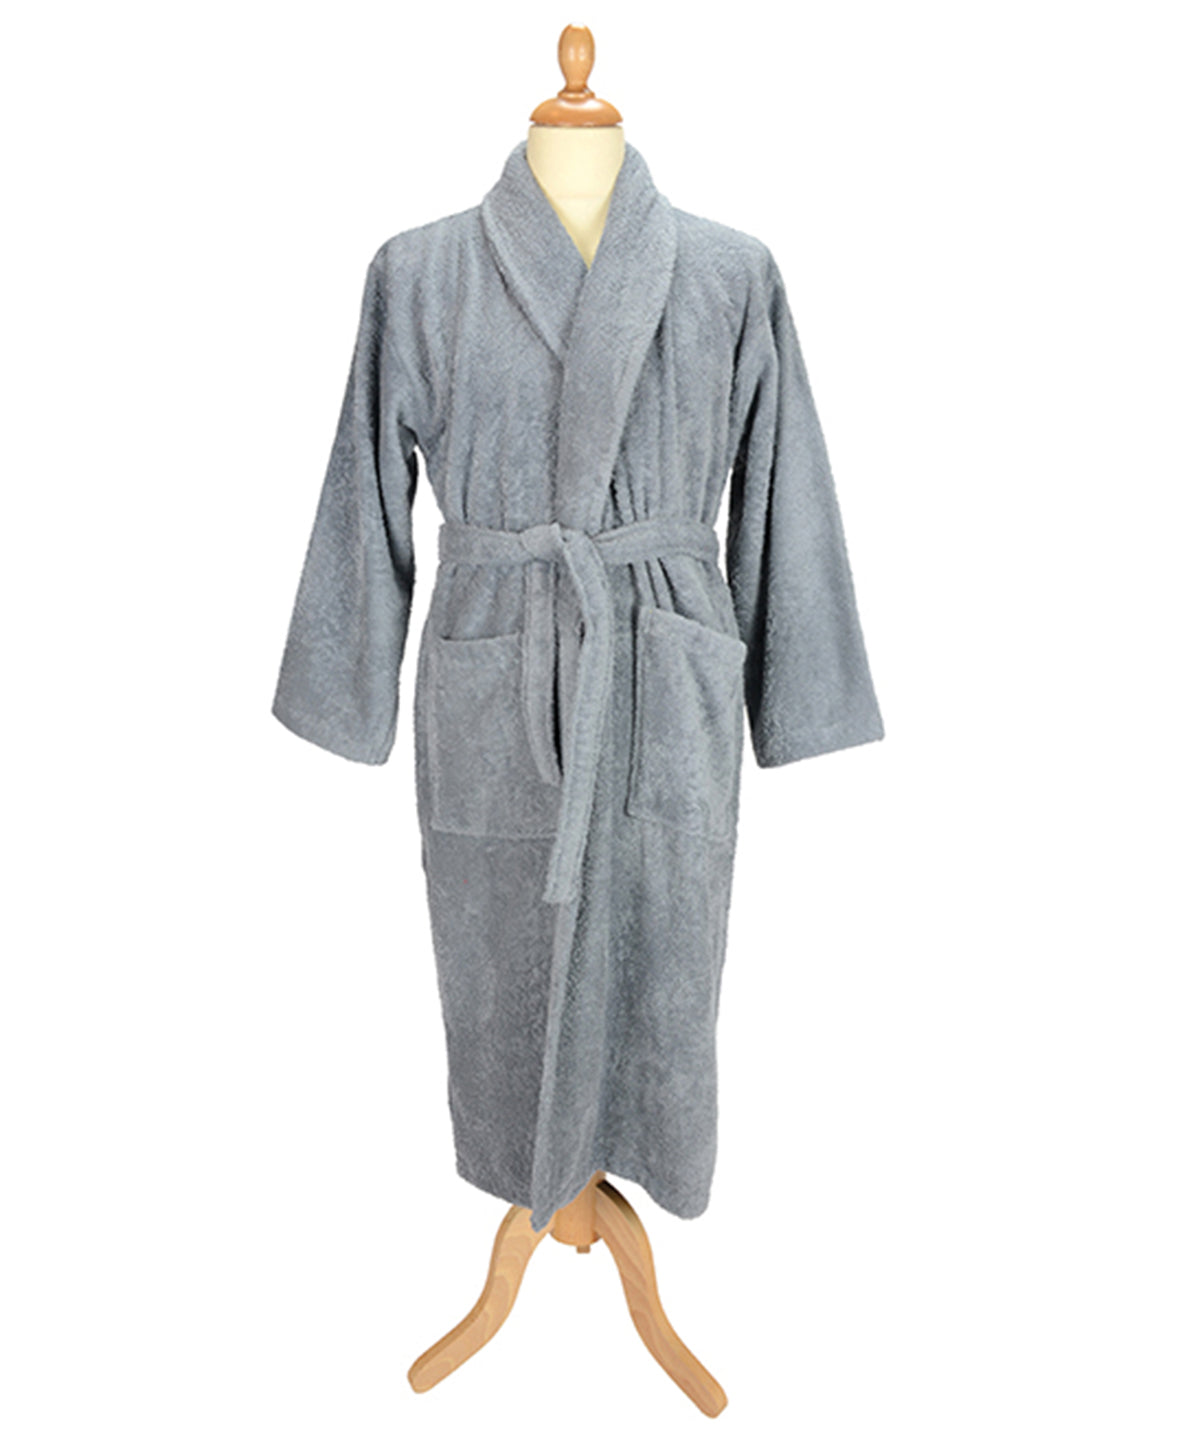 ARTG® Bath robe with shawl collar 